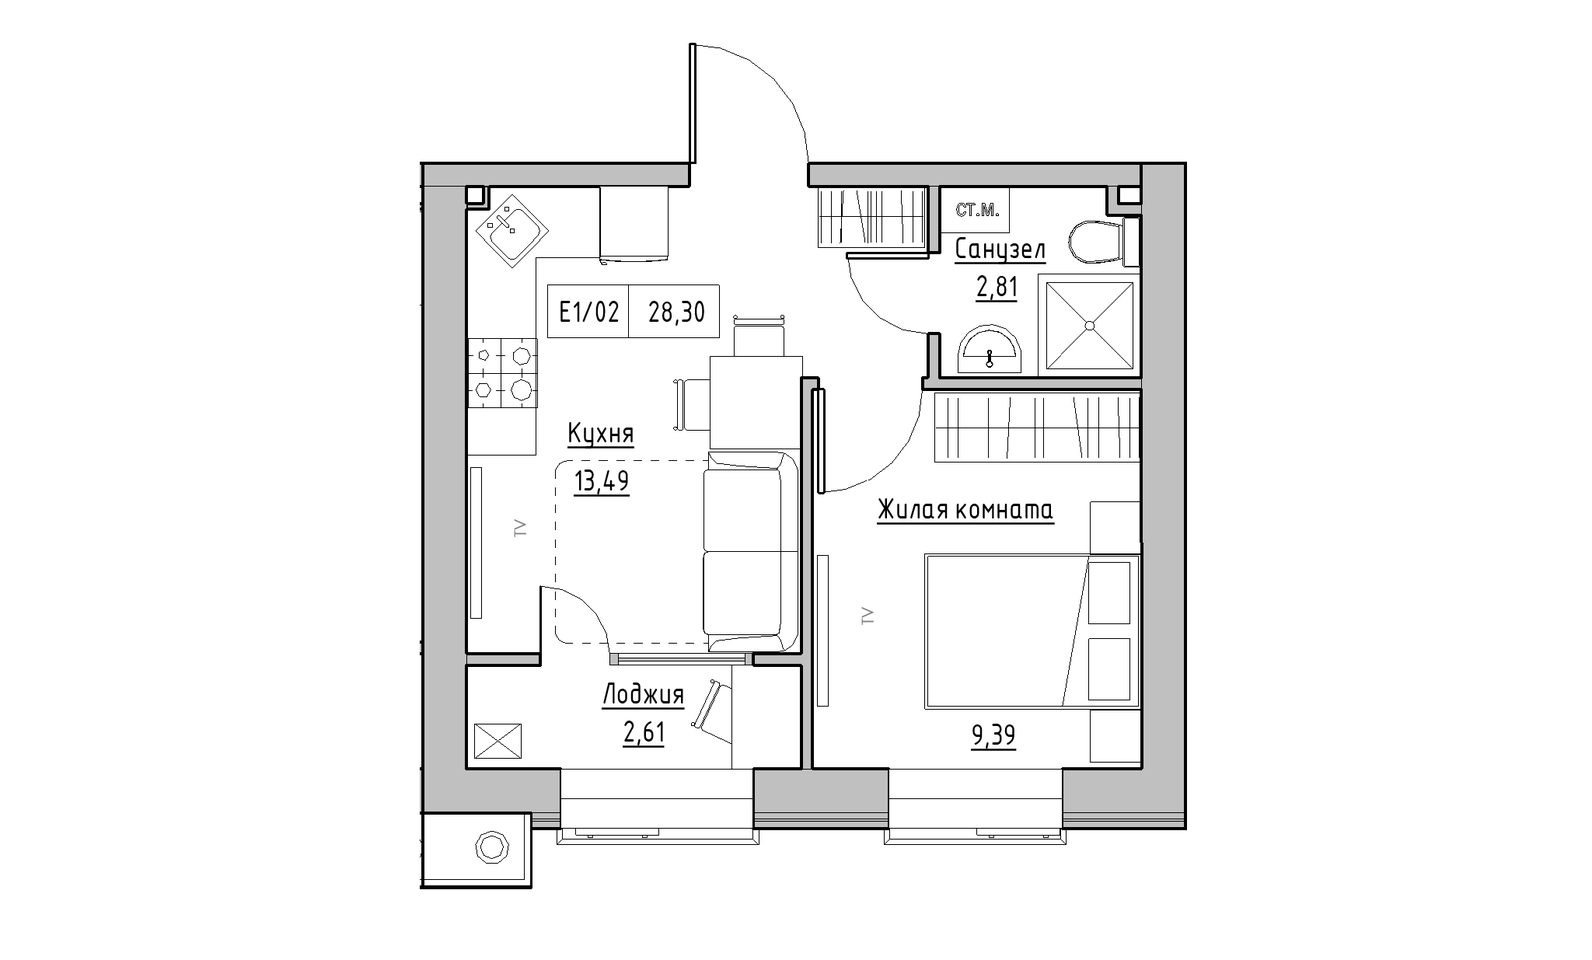 Планування 1-к квартира площею 28.3м2, KS-014-01/0001.